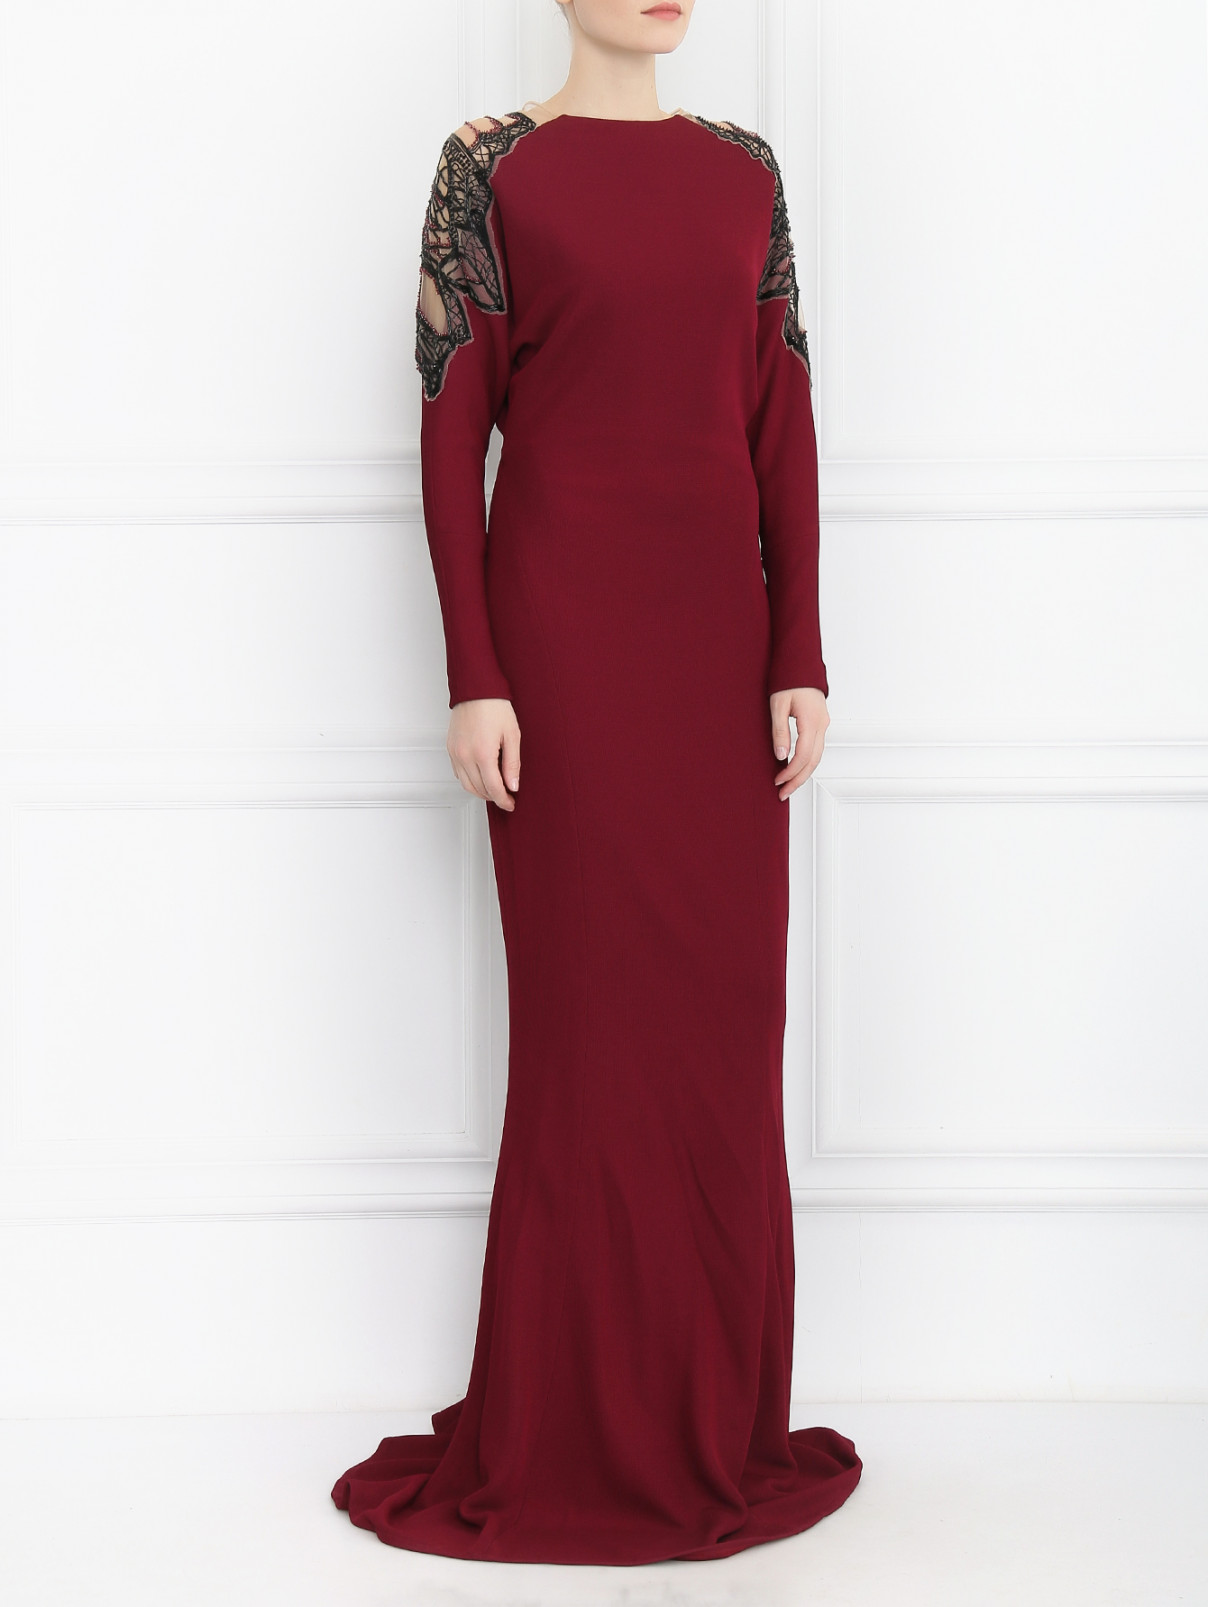 Платье-макси декорированное стеклярусом и бисером Zuhair Murad  –  Модель Общий вид  – Цвет:  Красный